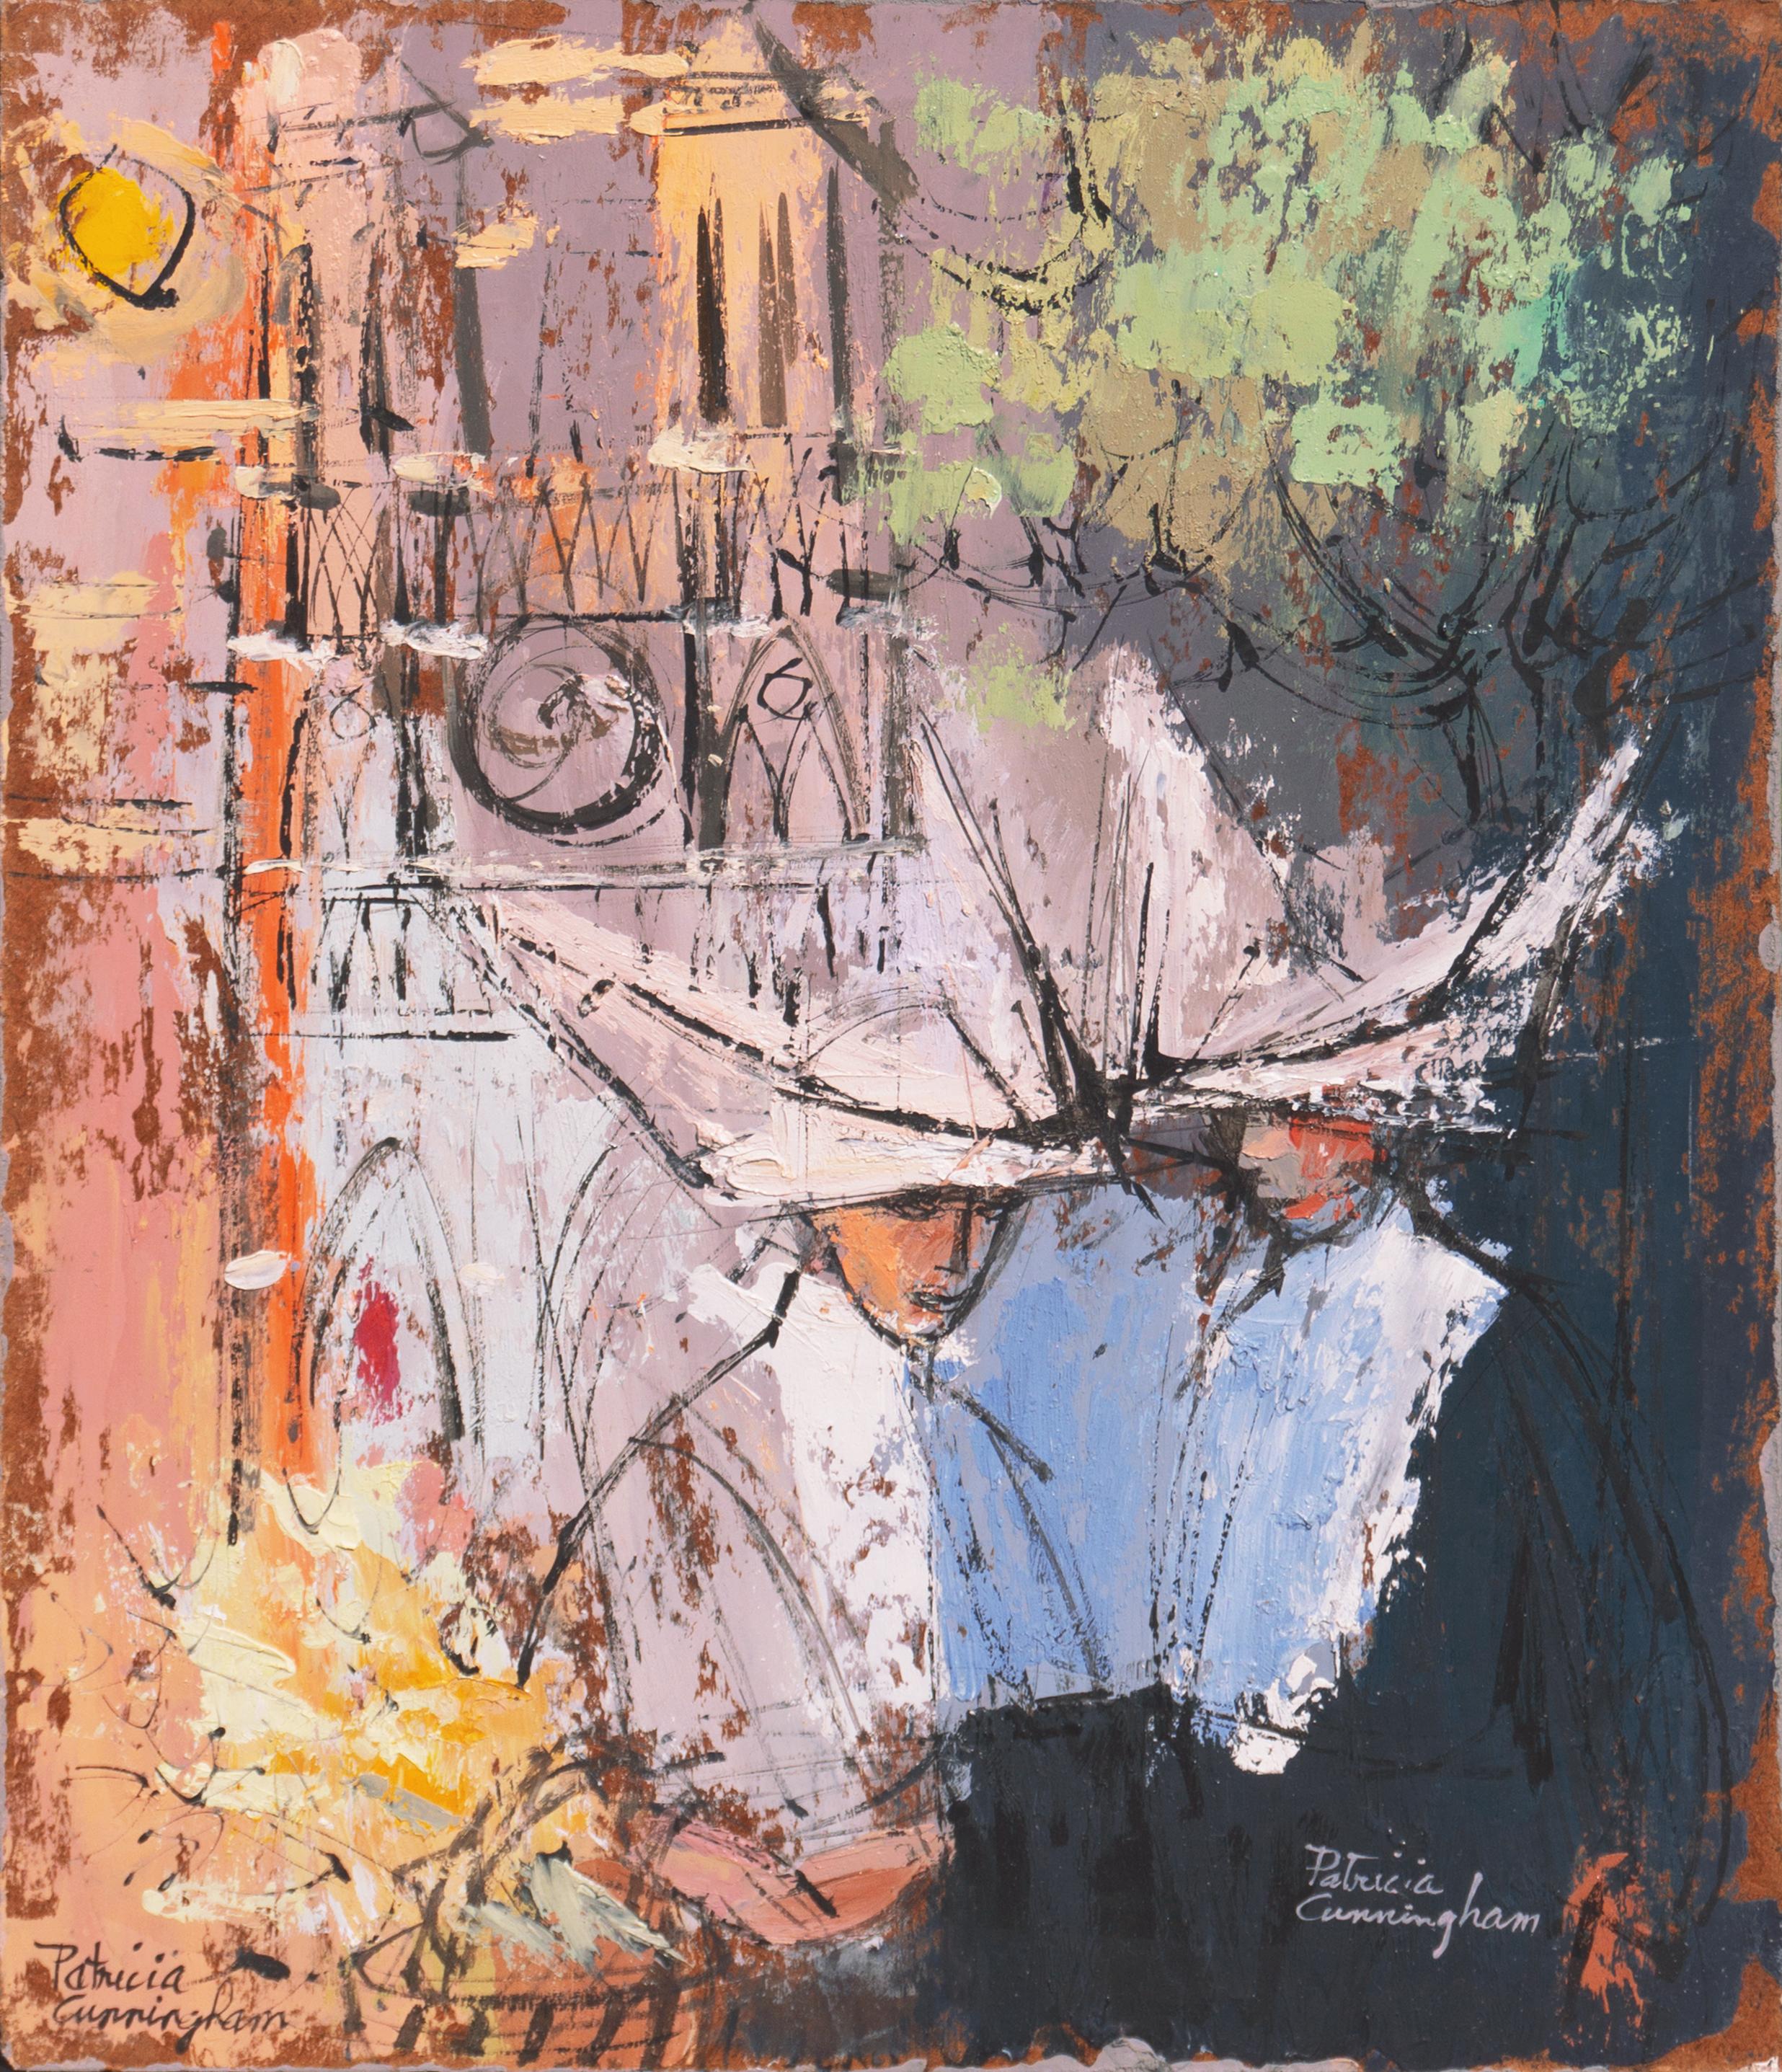 Patricia Stanley Cunningham Landscape Painting - 'Nuns at Notre-Dame', Paris, Munich, Woman Modernist, AIC, Smithsonian, Carmel